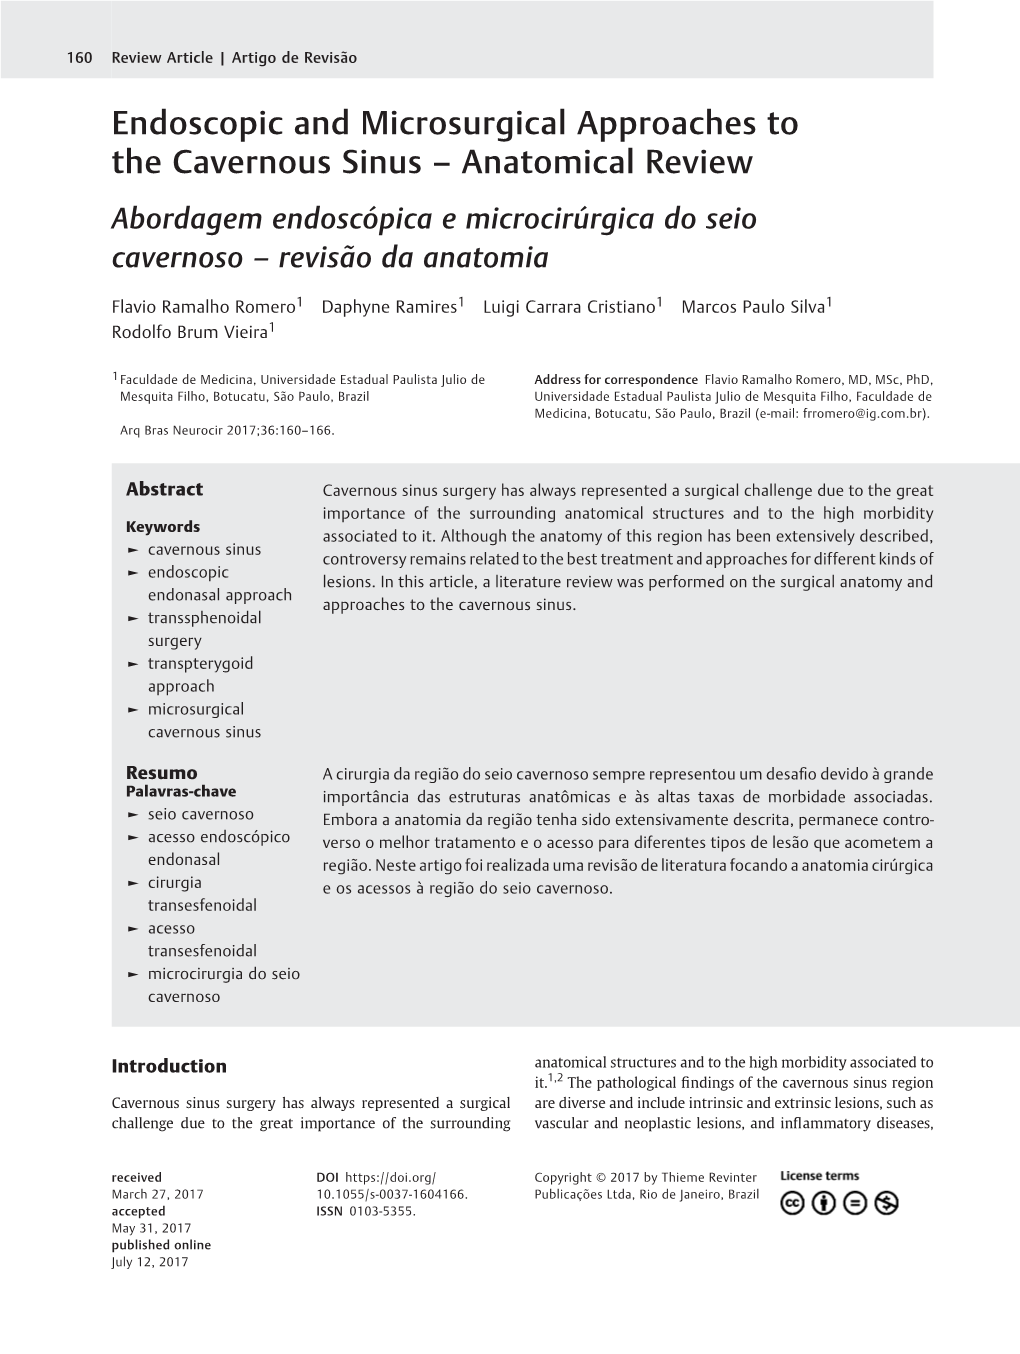 Endoscopic and Microsurgical Approaches to the Cavernous Sinus – Anatomical Review Abordagem Endoscópica E Microcirúrgica Do Seio Cavernoso – Revisão Da Anatomia